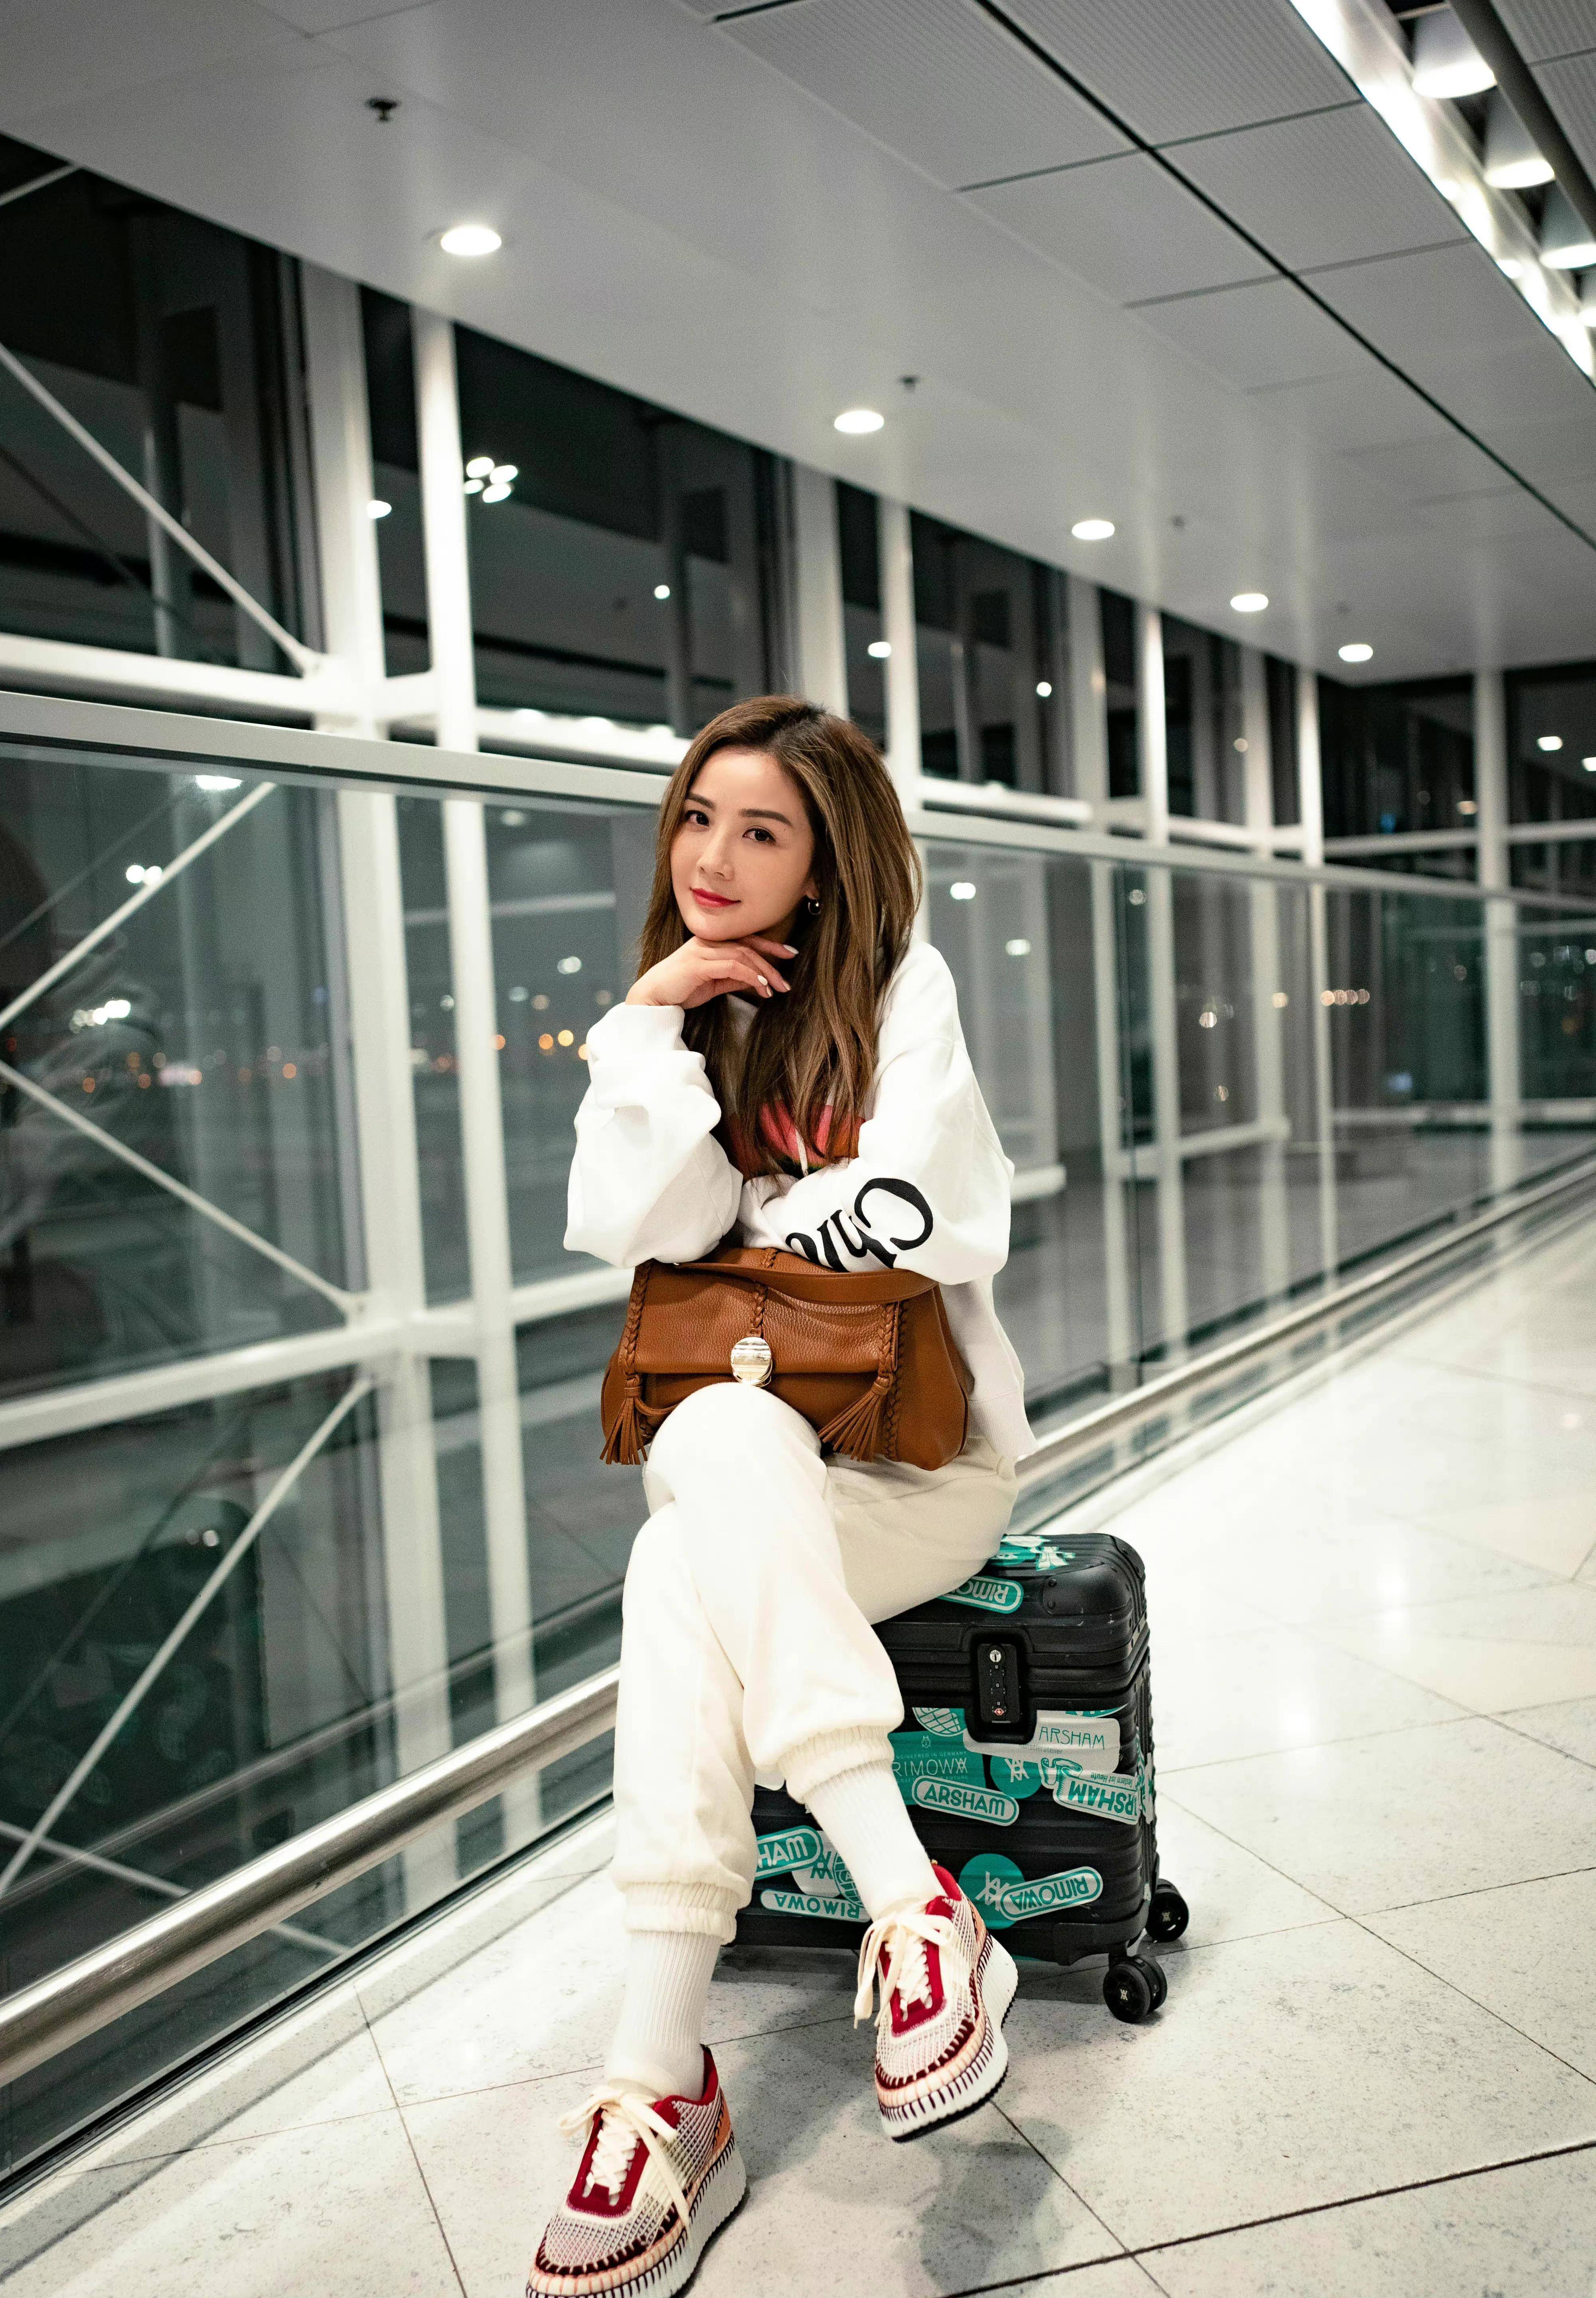 阿sa蔡卓妍去巴黎时装周,一身白色休闲装,机场照很吸睛